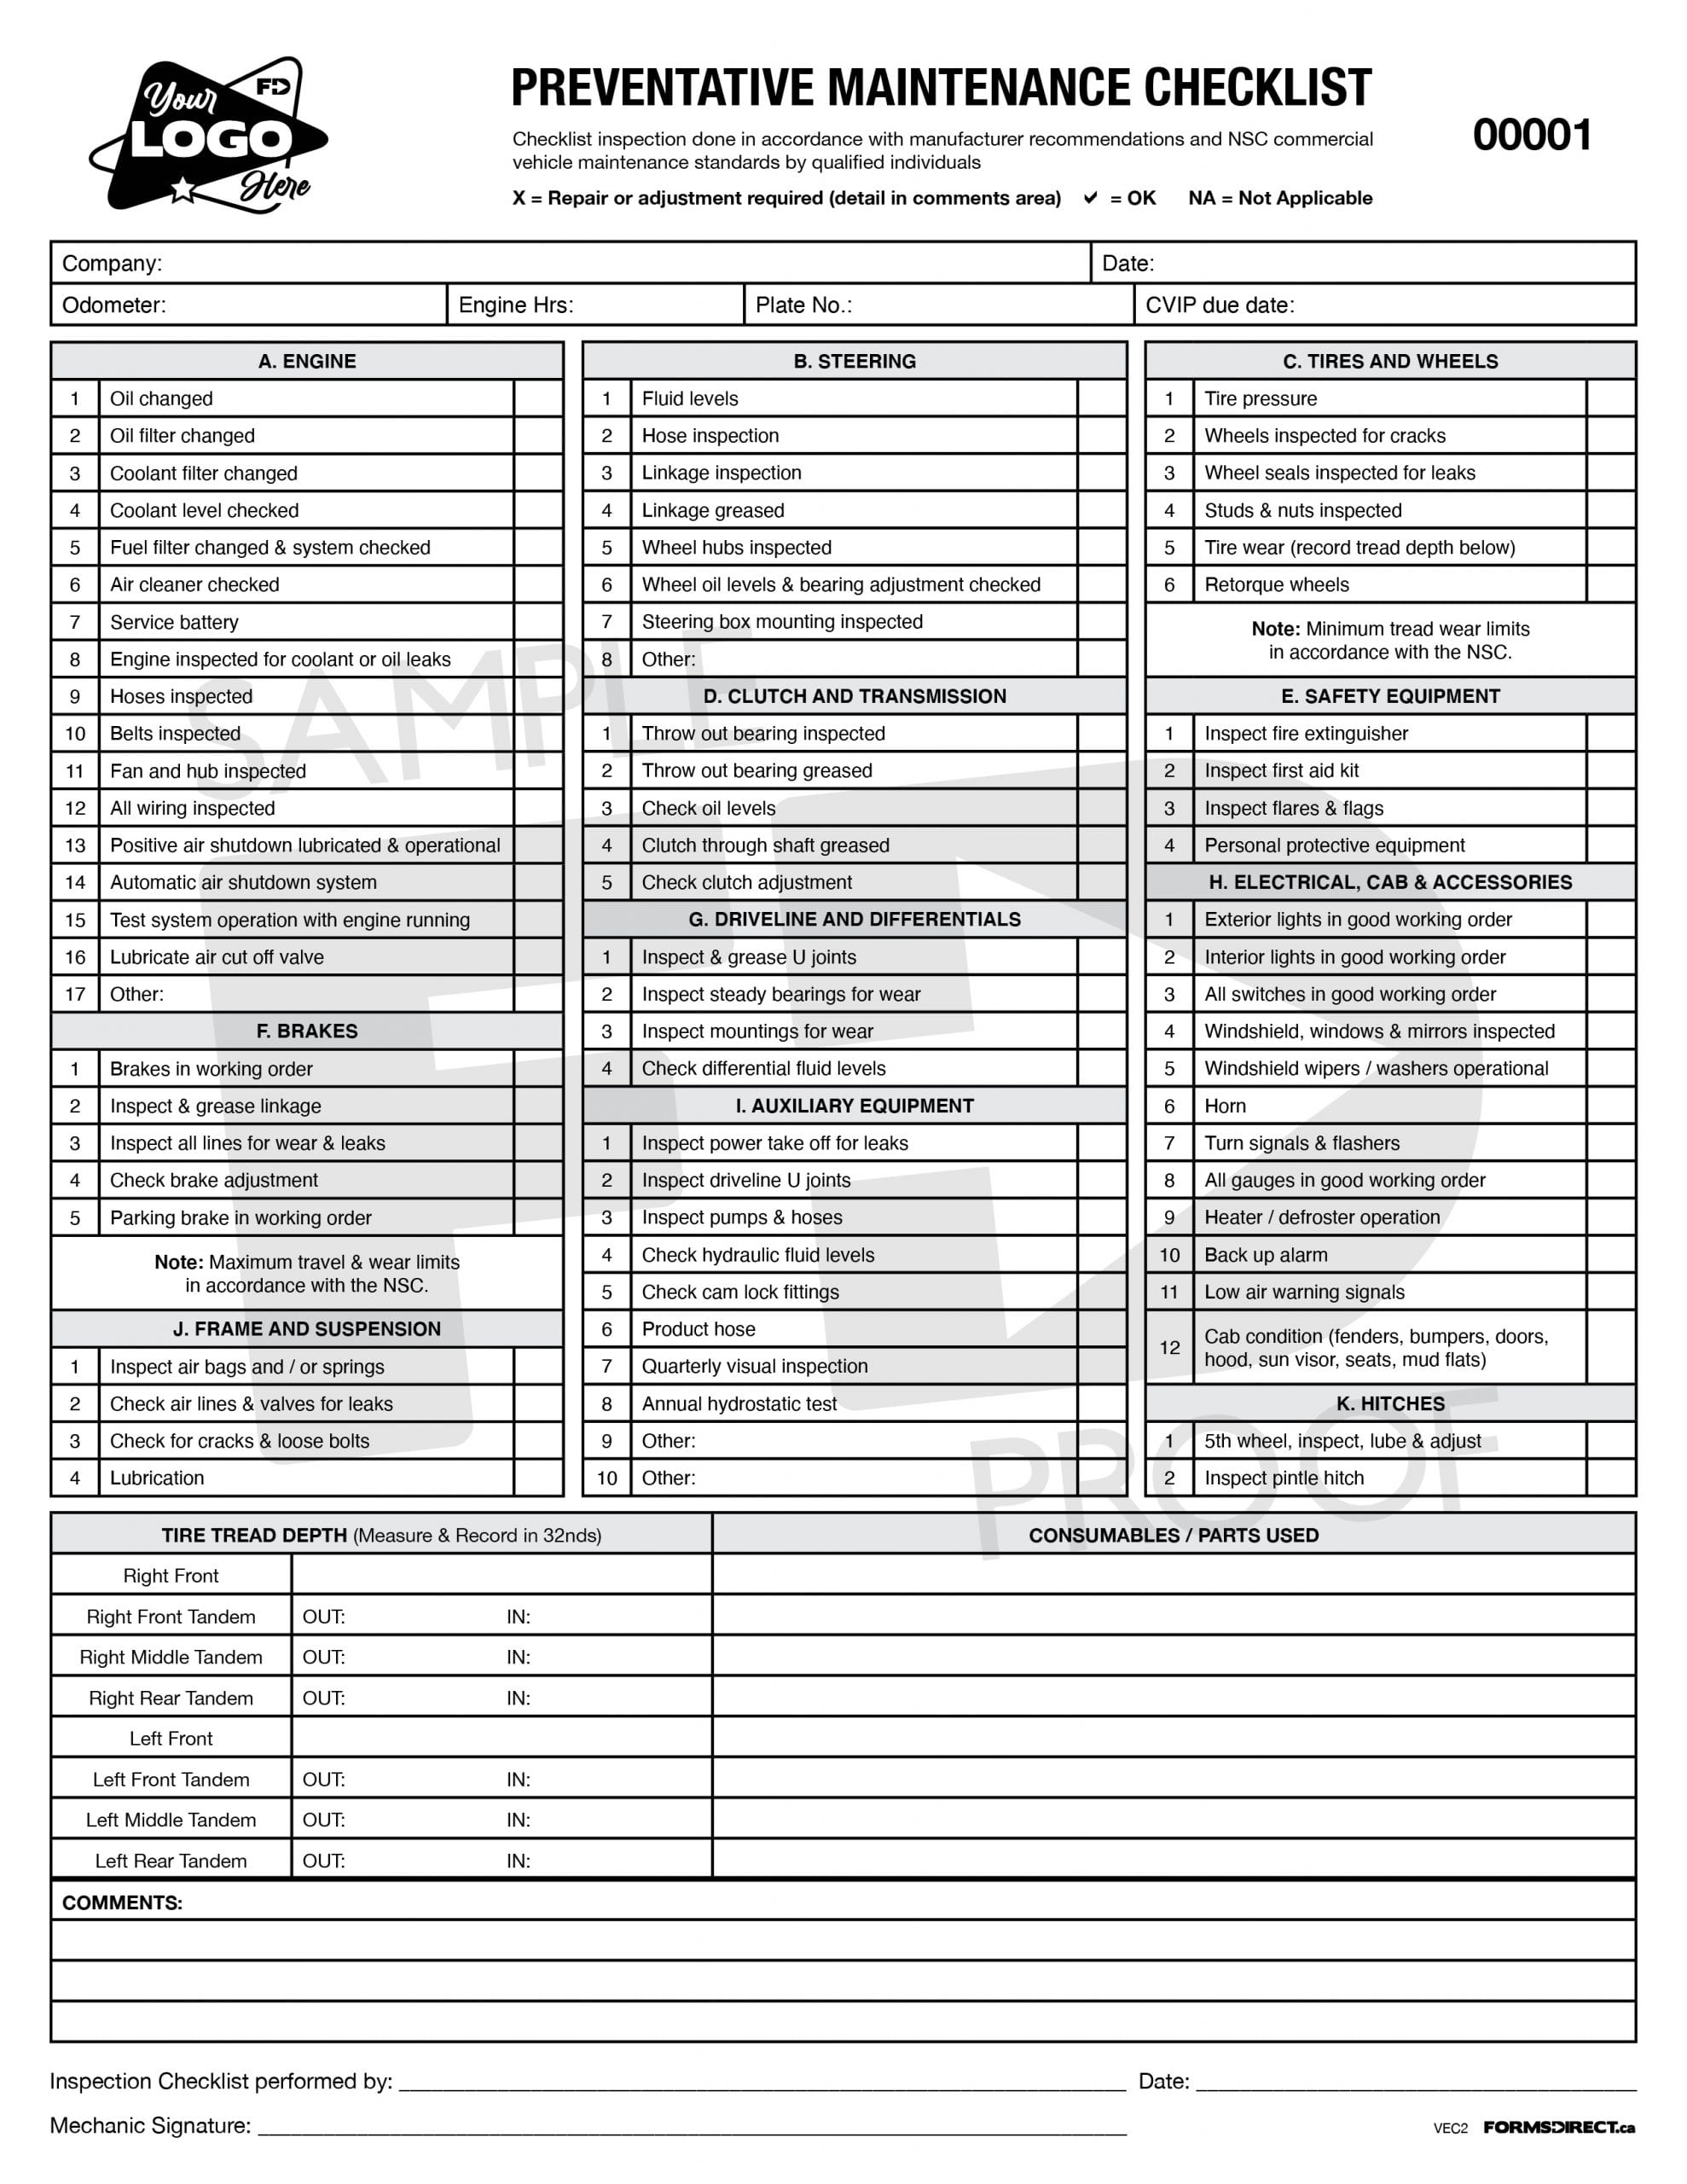 preventative-maintenance-checklist-vec2-custom-form-forms-direct